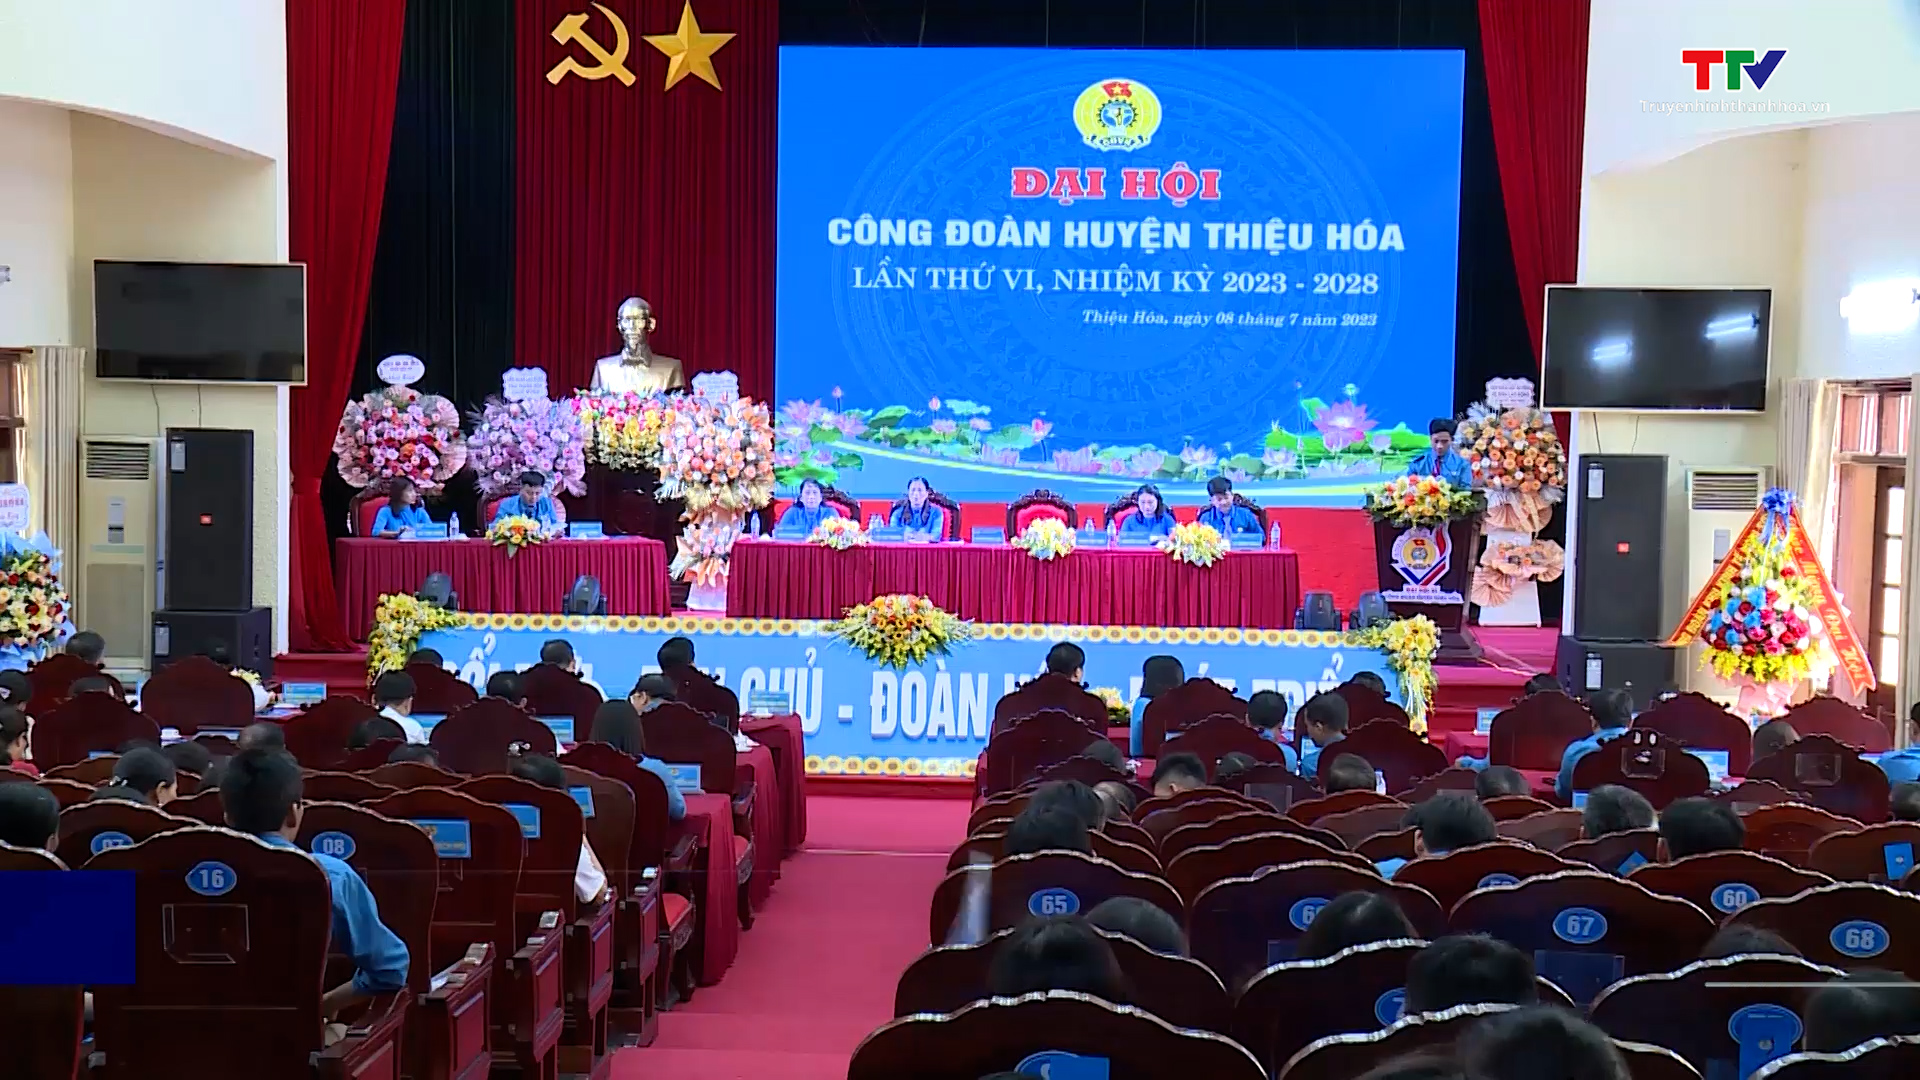 Đại hội Công đoàn huyện Thiệu Hóa lần thứ VI, nhiệm kỳ 2023 – 2028 - Ảnh 2.